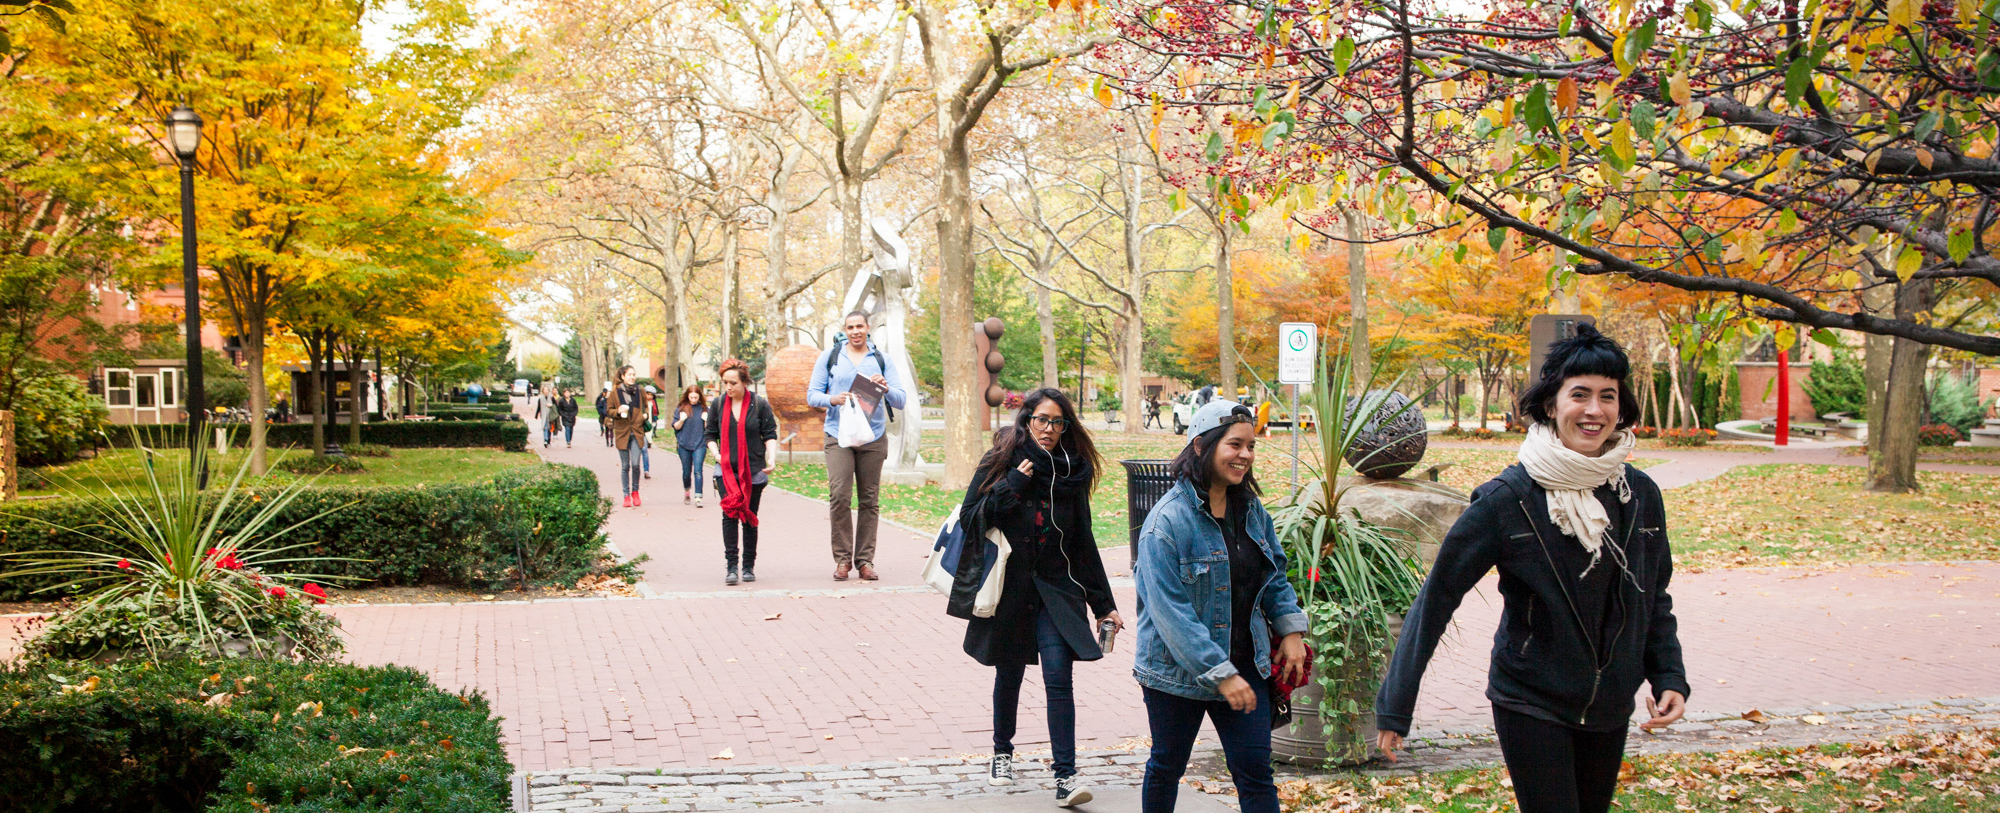 Pratt students walk through campus on a fall day